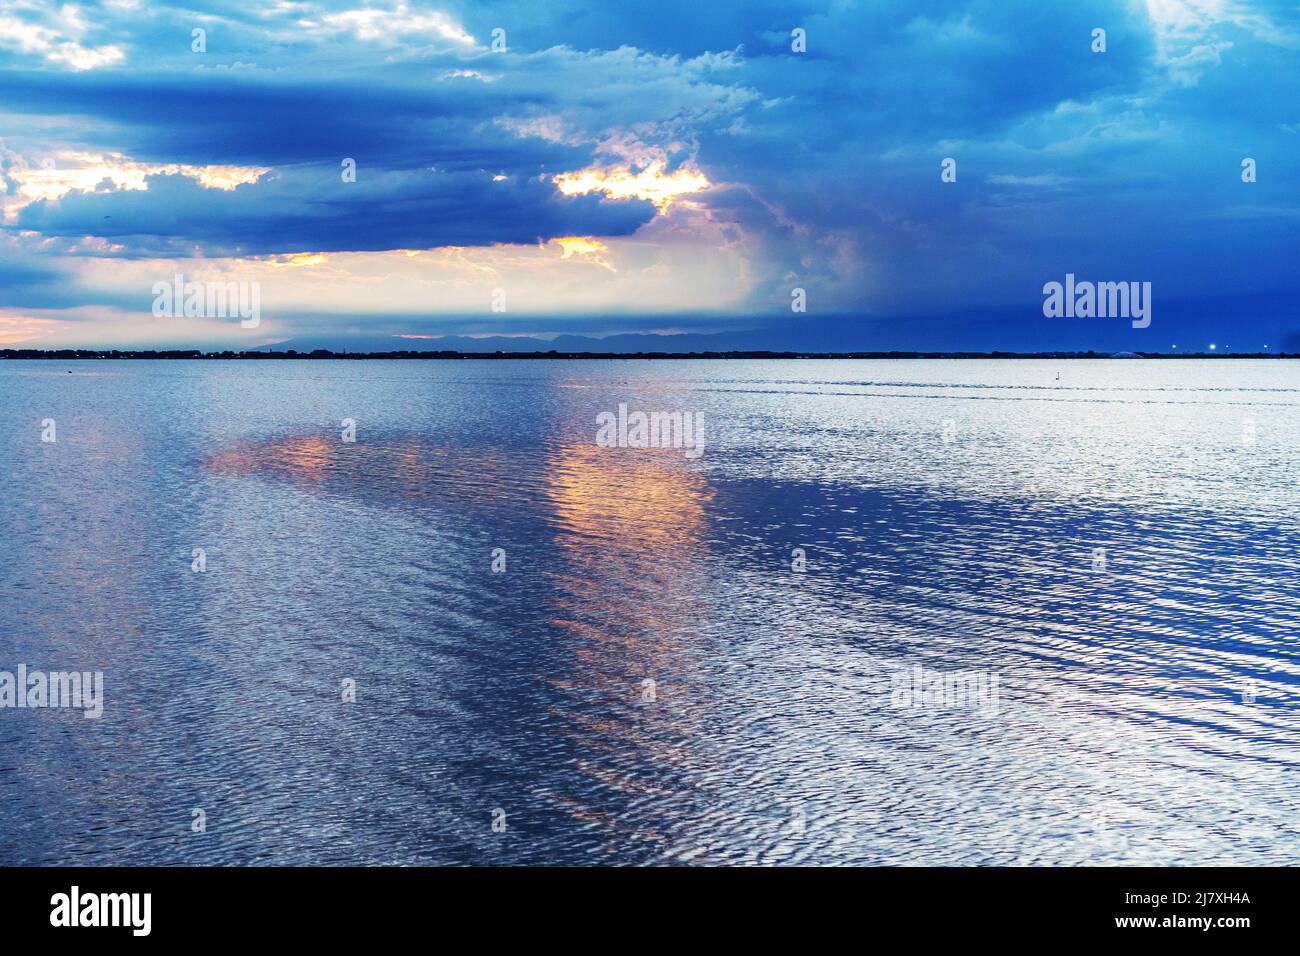 Schöner und friedlicher Sonnenuntergang über dem Meer mit blauen Wolken und orangefarbener Sonnenreflexion im Wasser Stockfoto